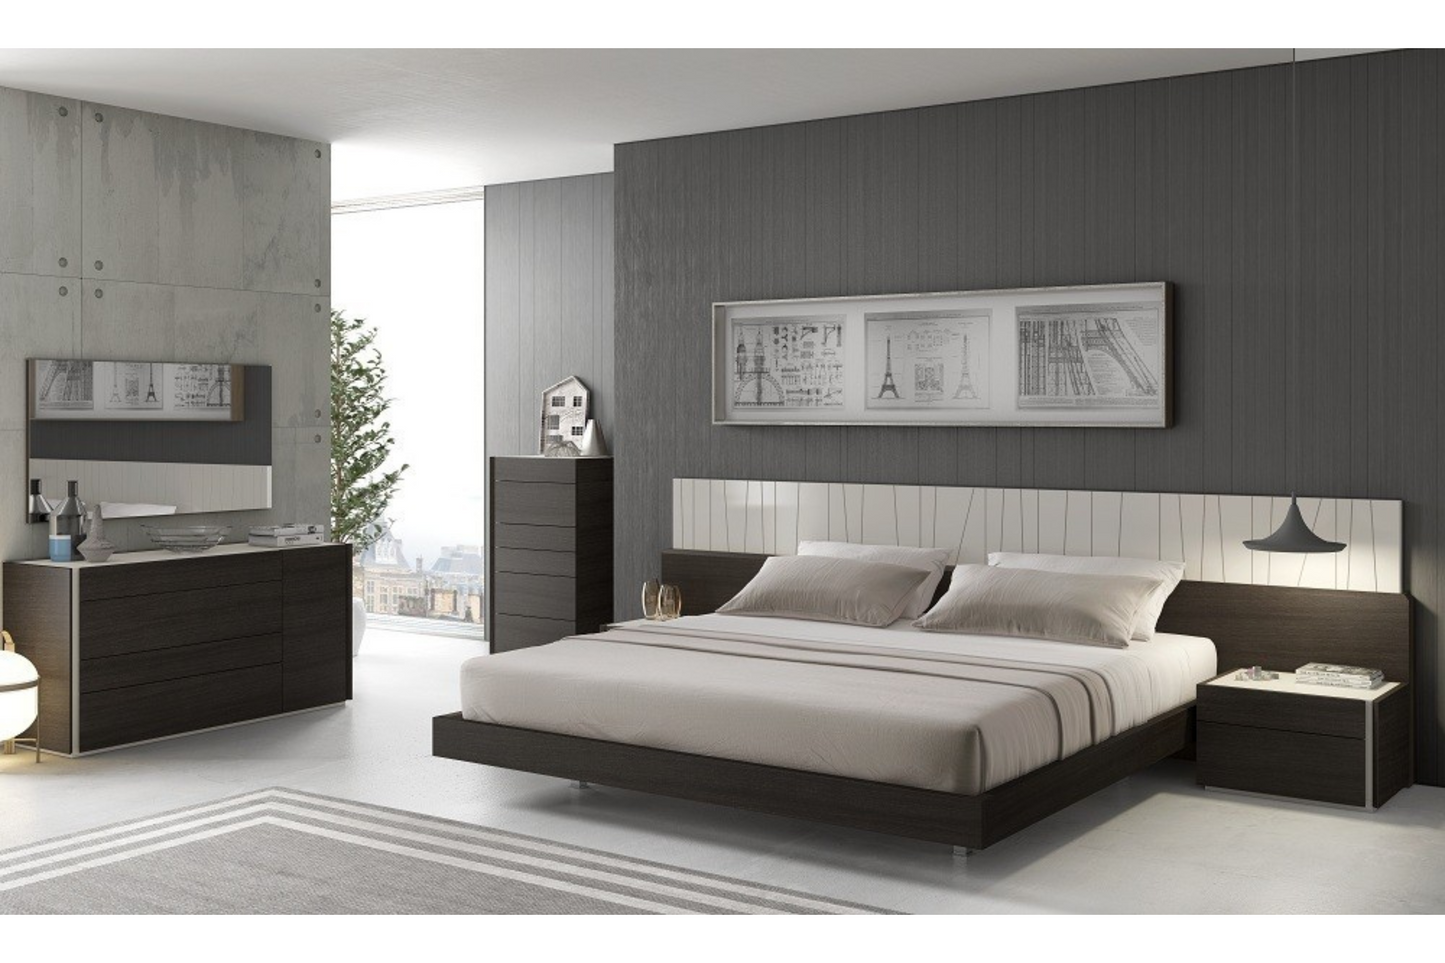 Porto Premium Bedroom Bed SKU: 17867